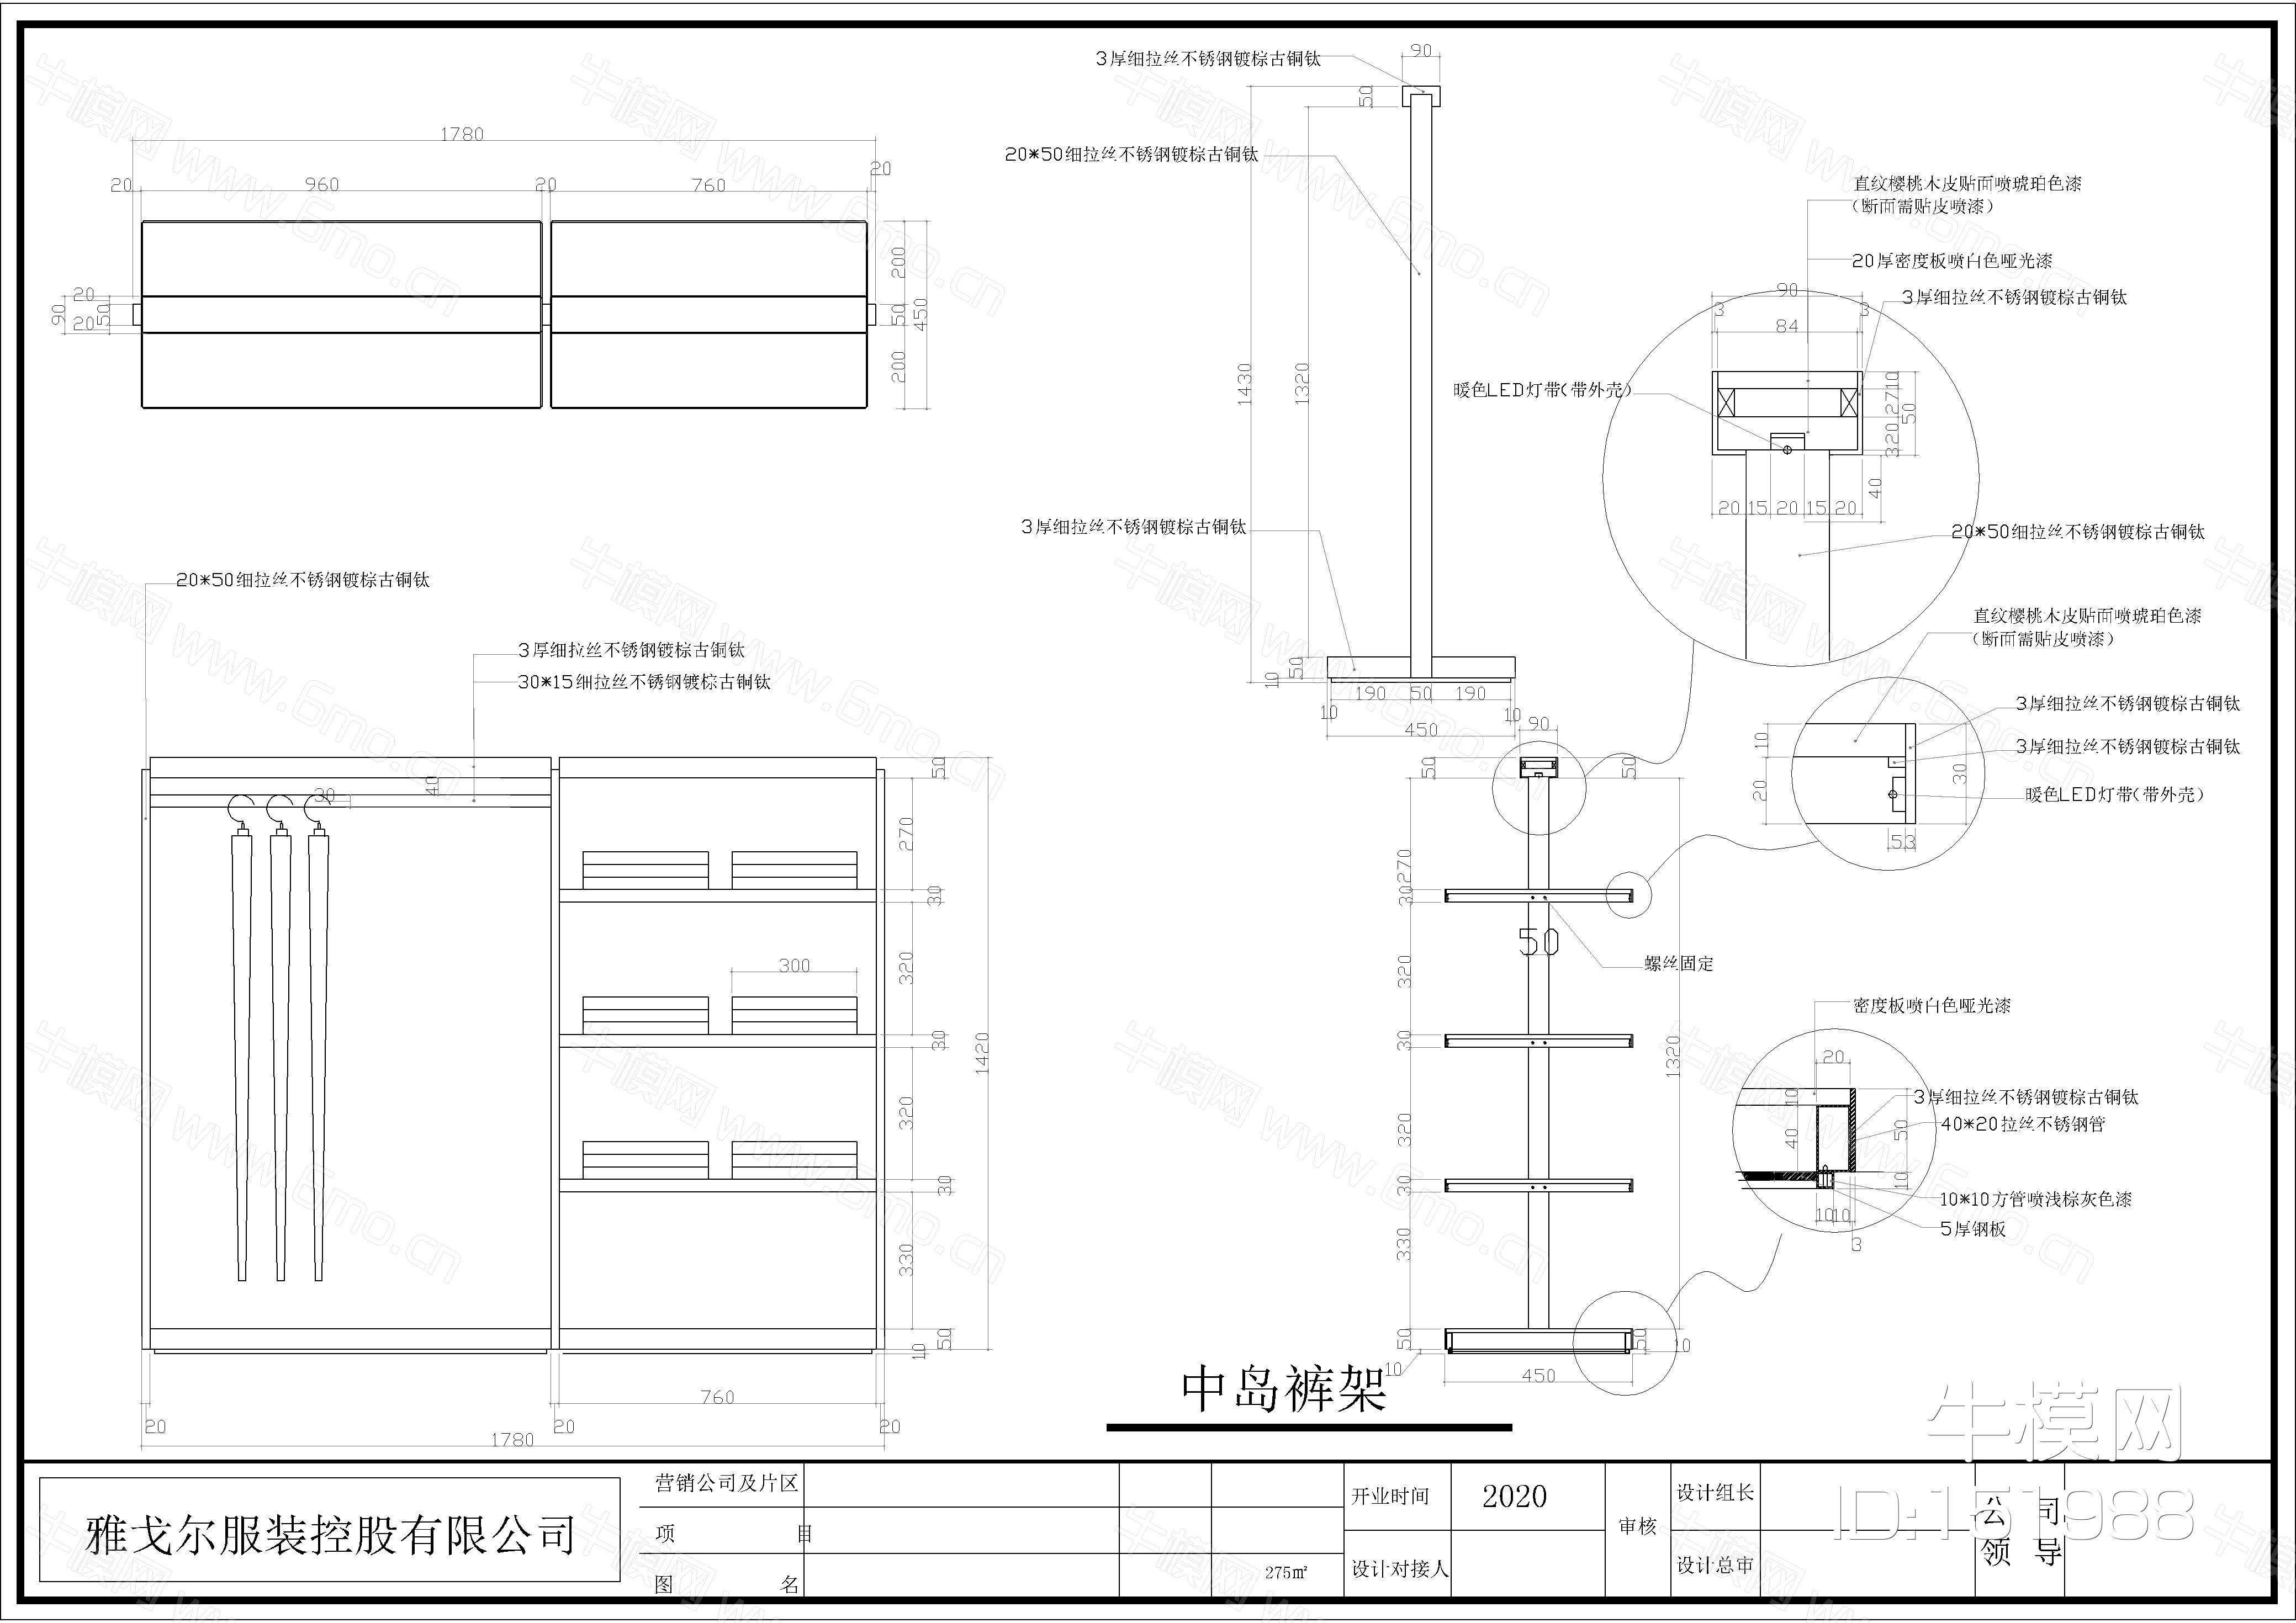 雅戈尔服装品牌店装修设计施工图CAD